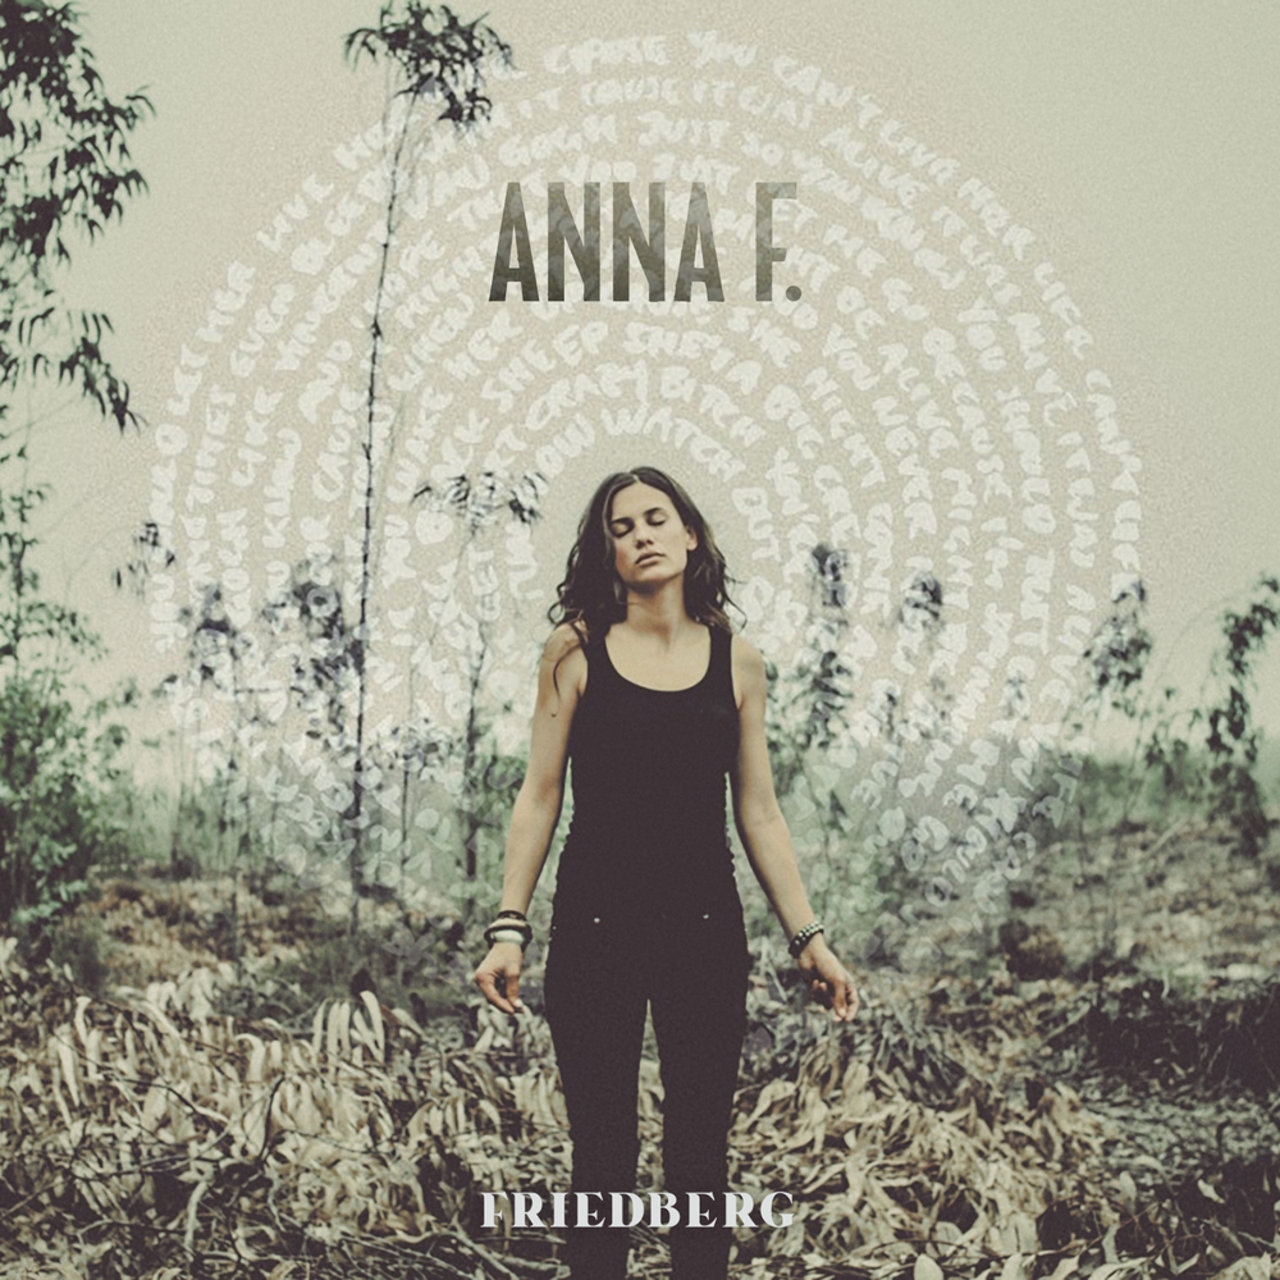 Anna F. — Friedberg cover artwork